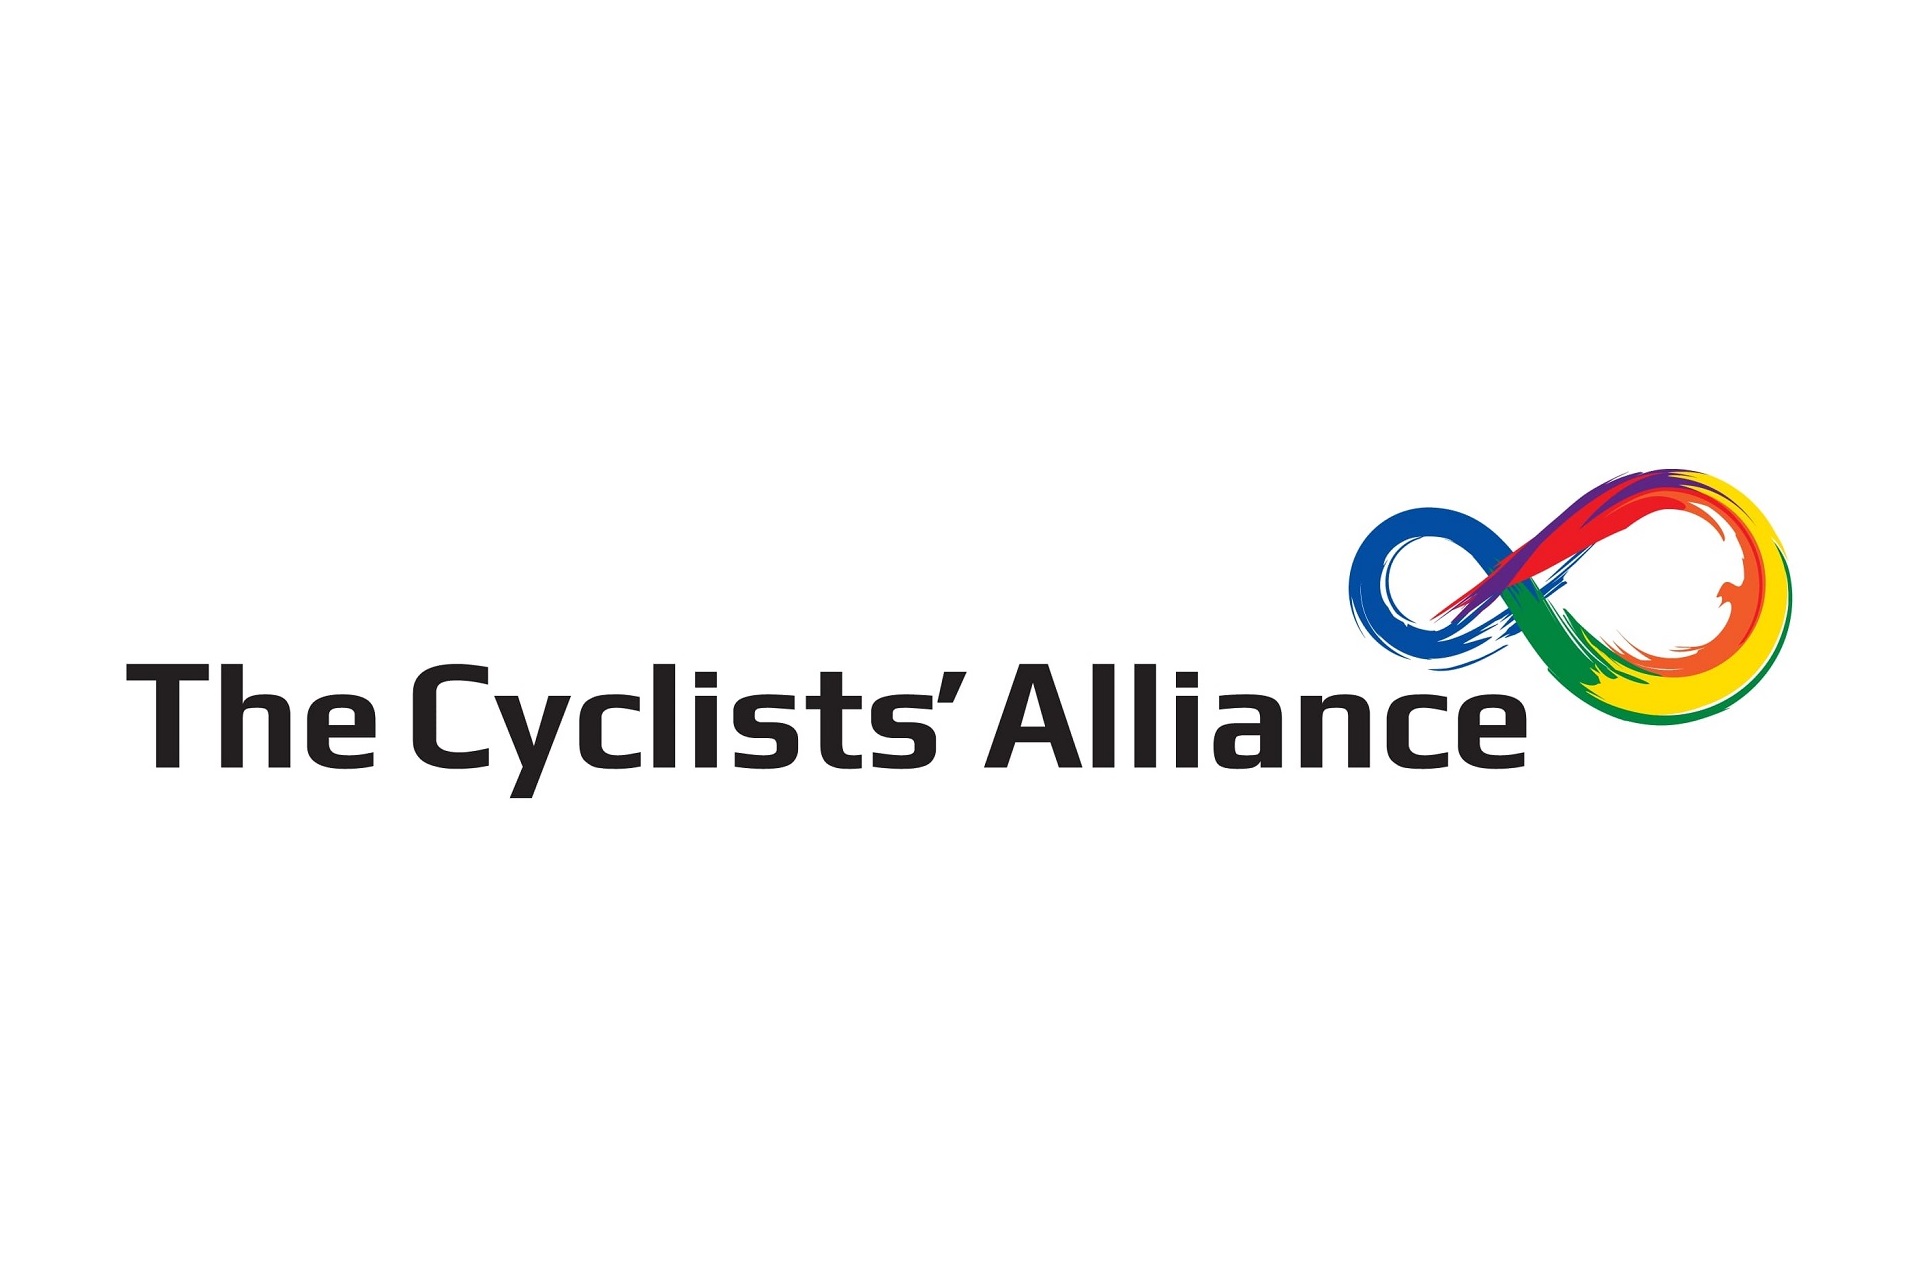 UCI nie konsultuje zmian z peletonem kobiet, twierdzi The Cyclists’ Alliance